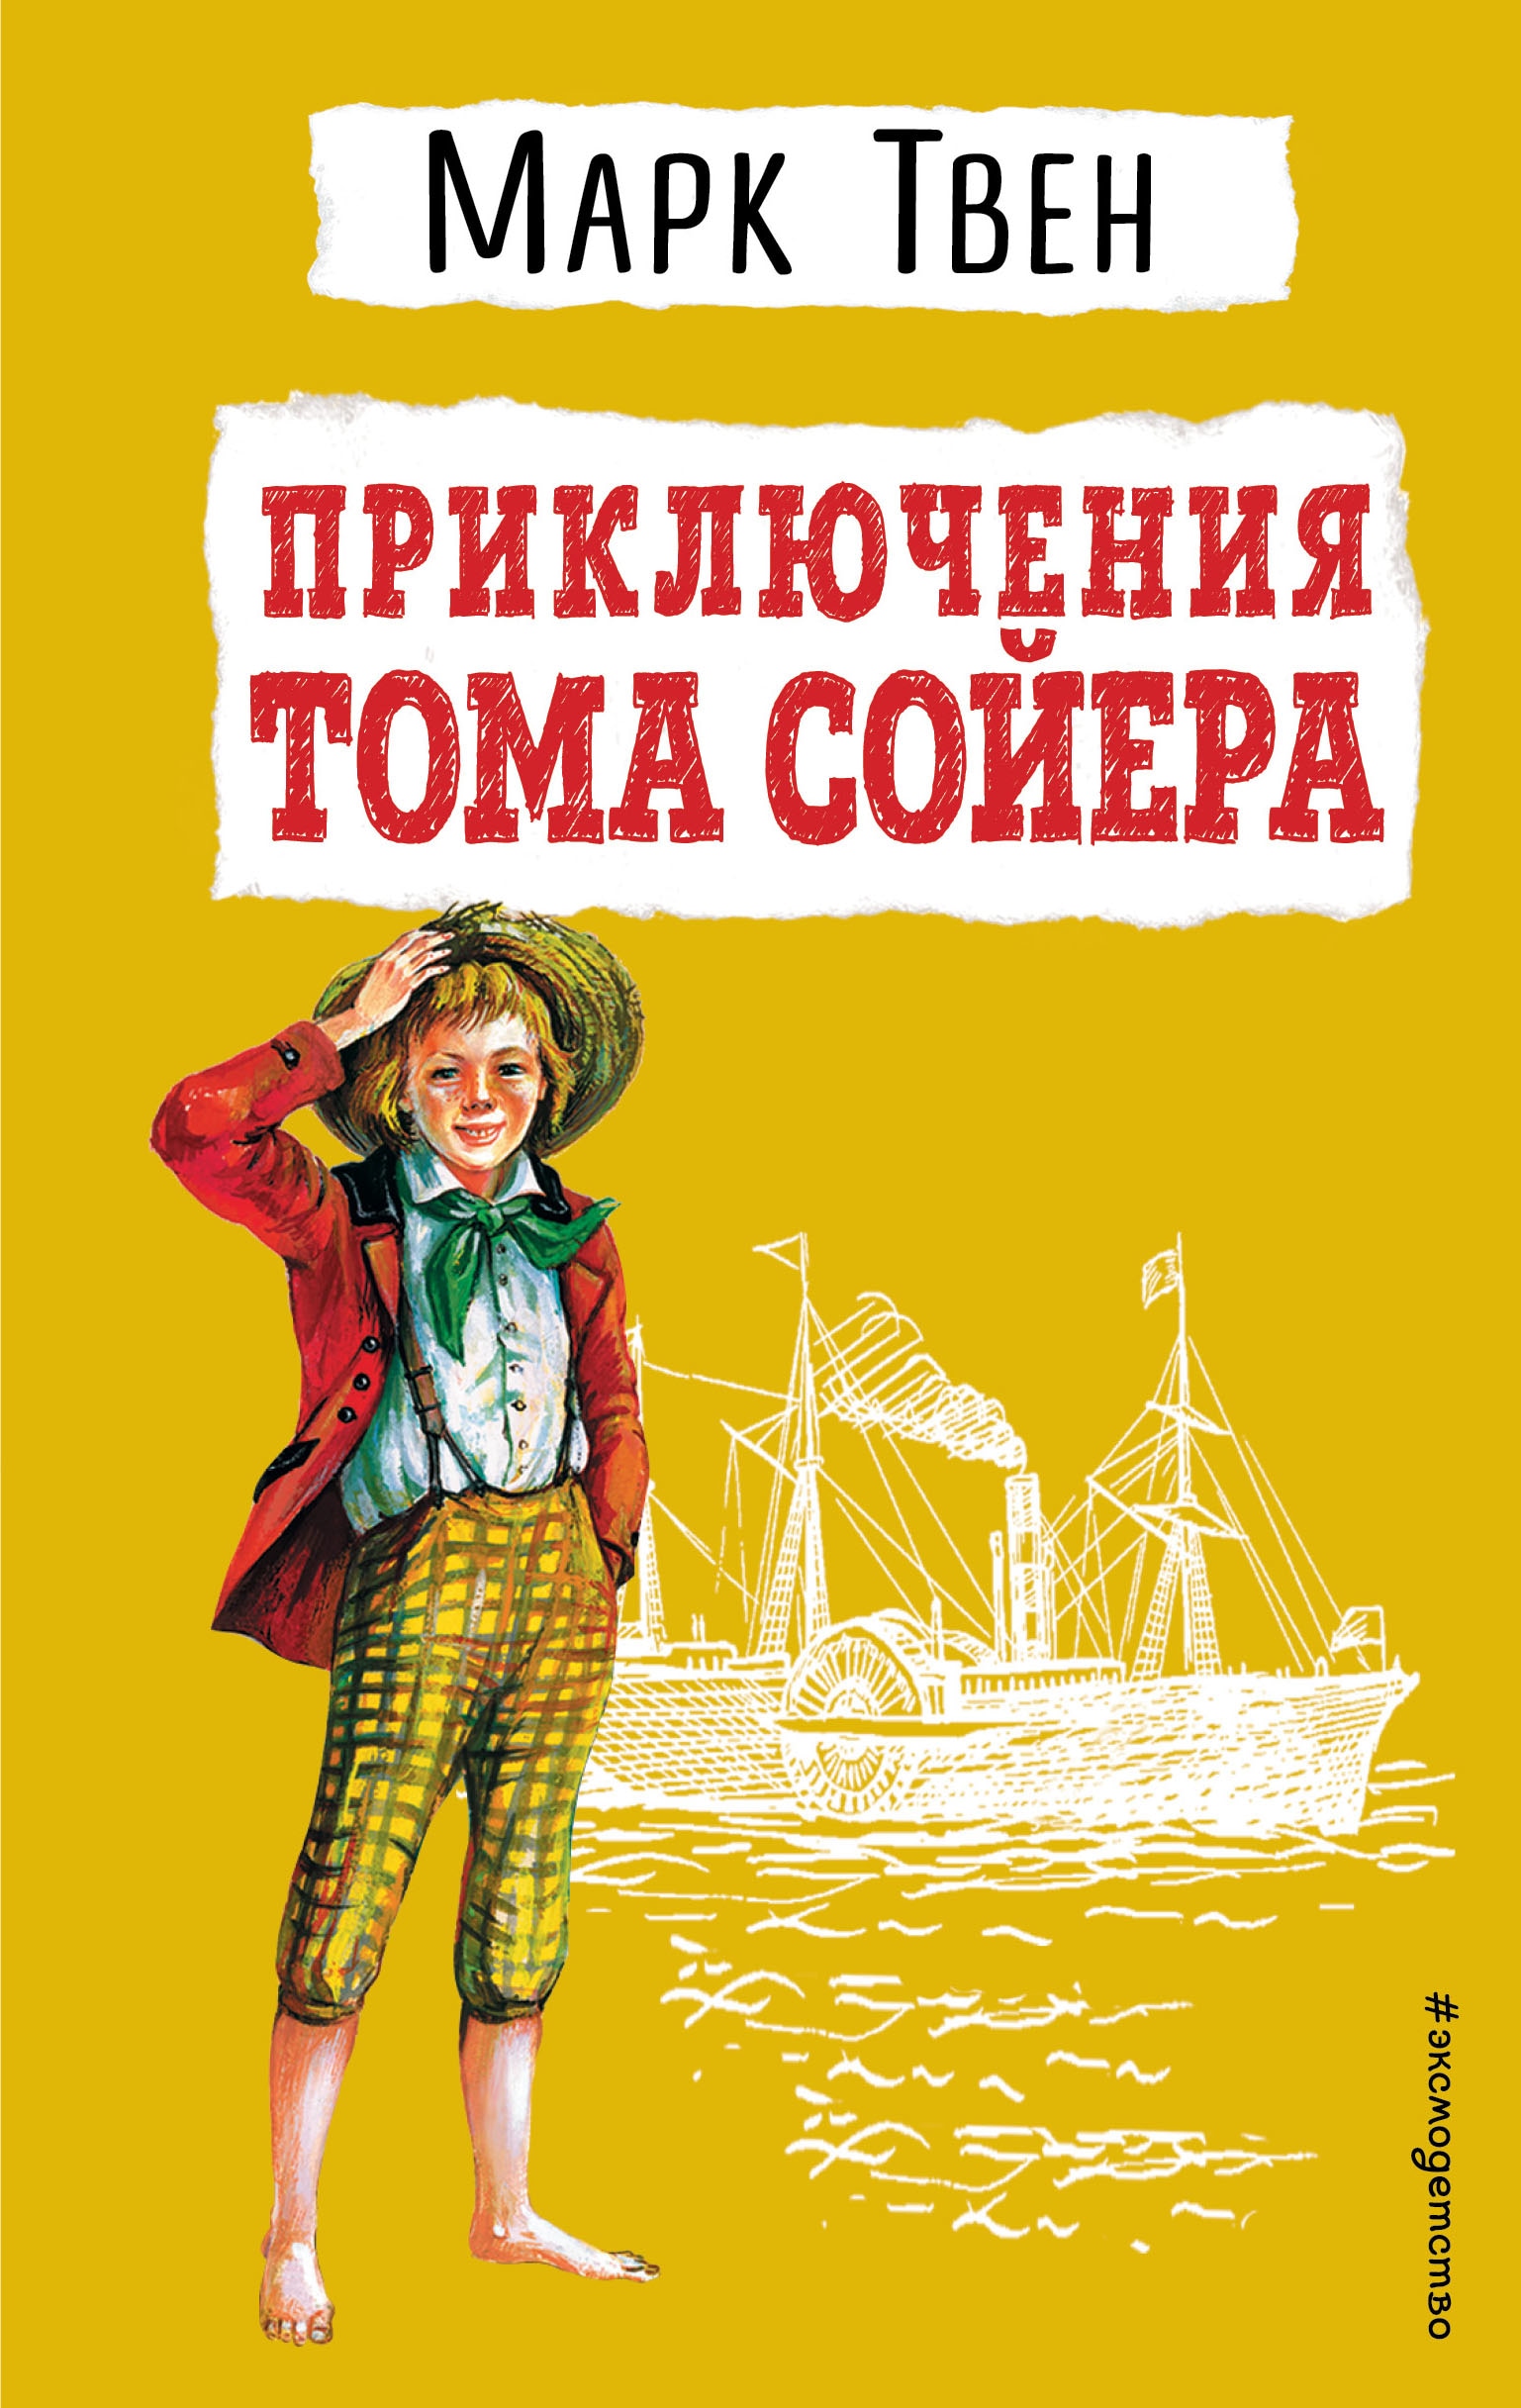 Приключения Тома Сойера (ил. В. Гальдяева)